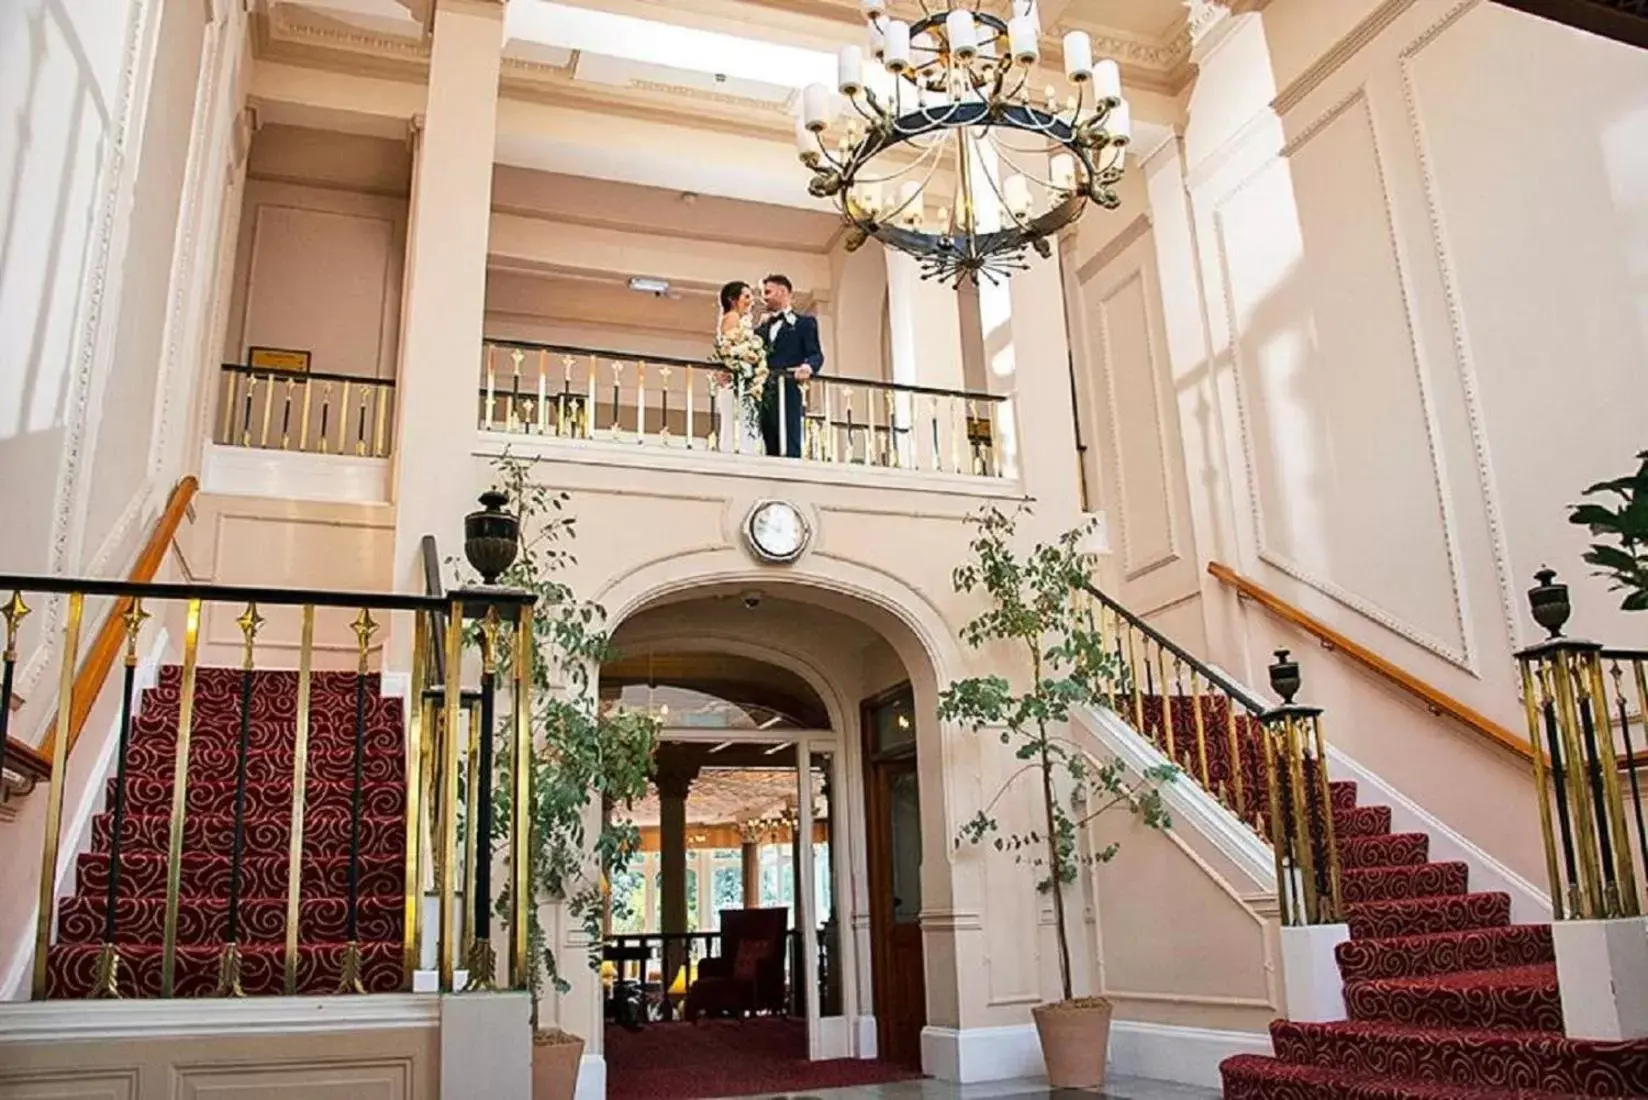 Lobby or reception in Royal Bath Hotel & Spa Bournemouth